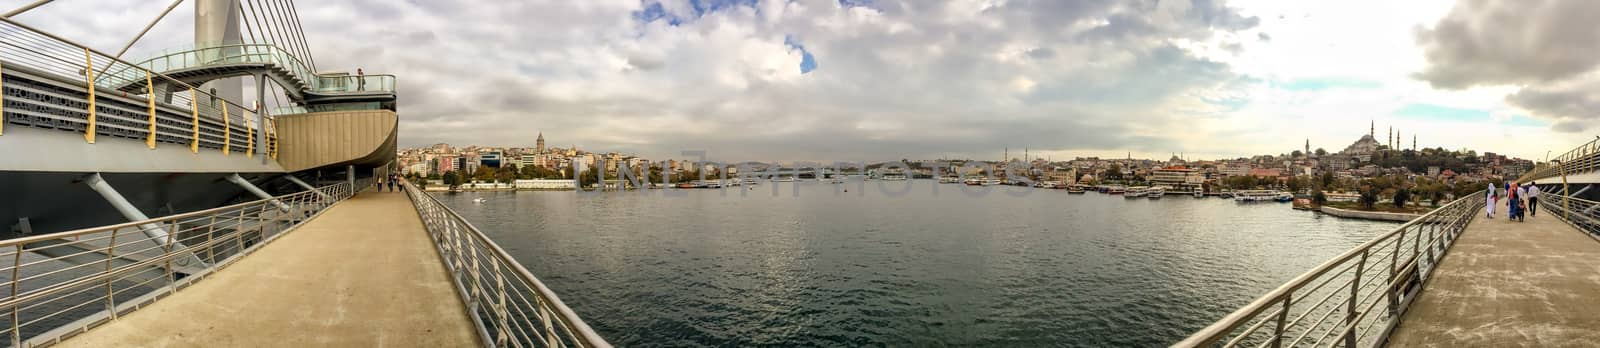 Istanbul. Panoramic view from New Galata Bridge.